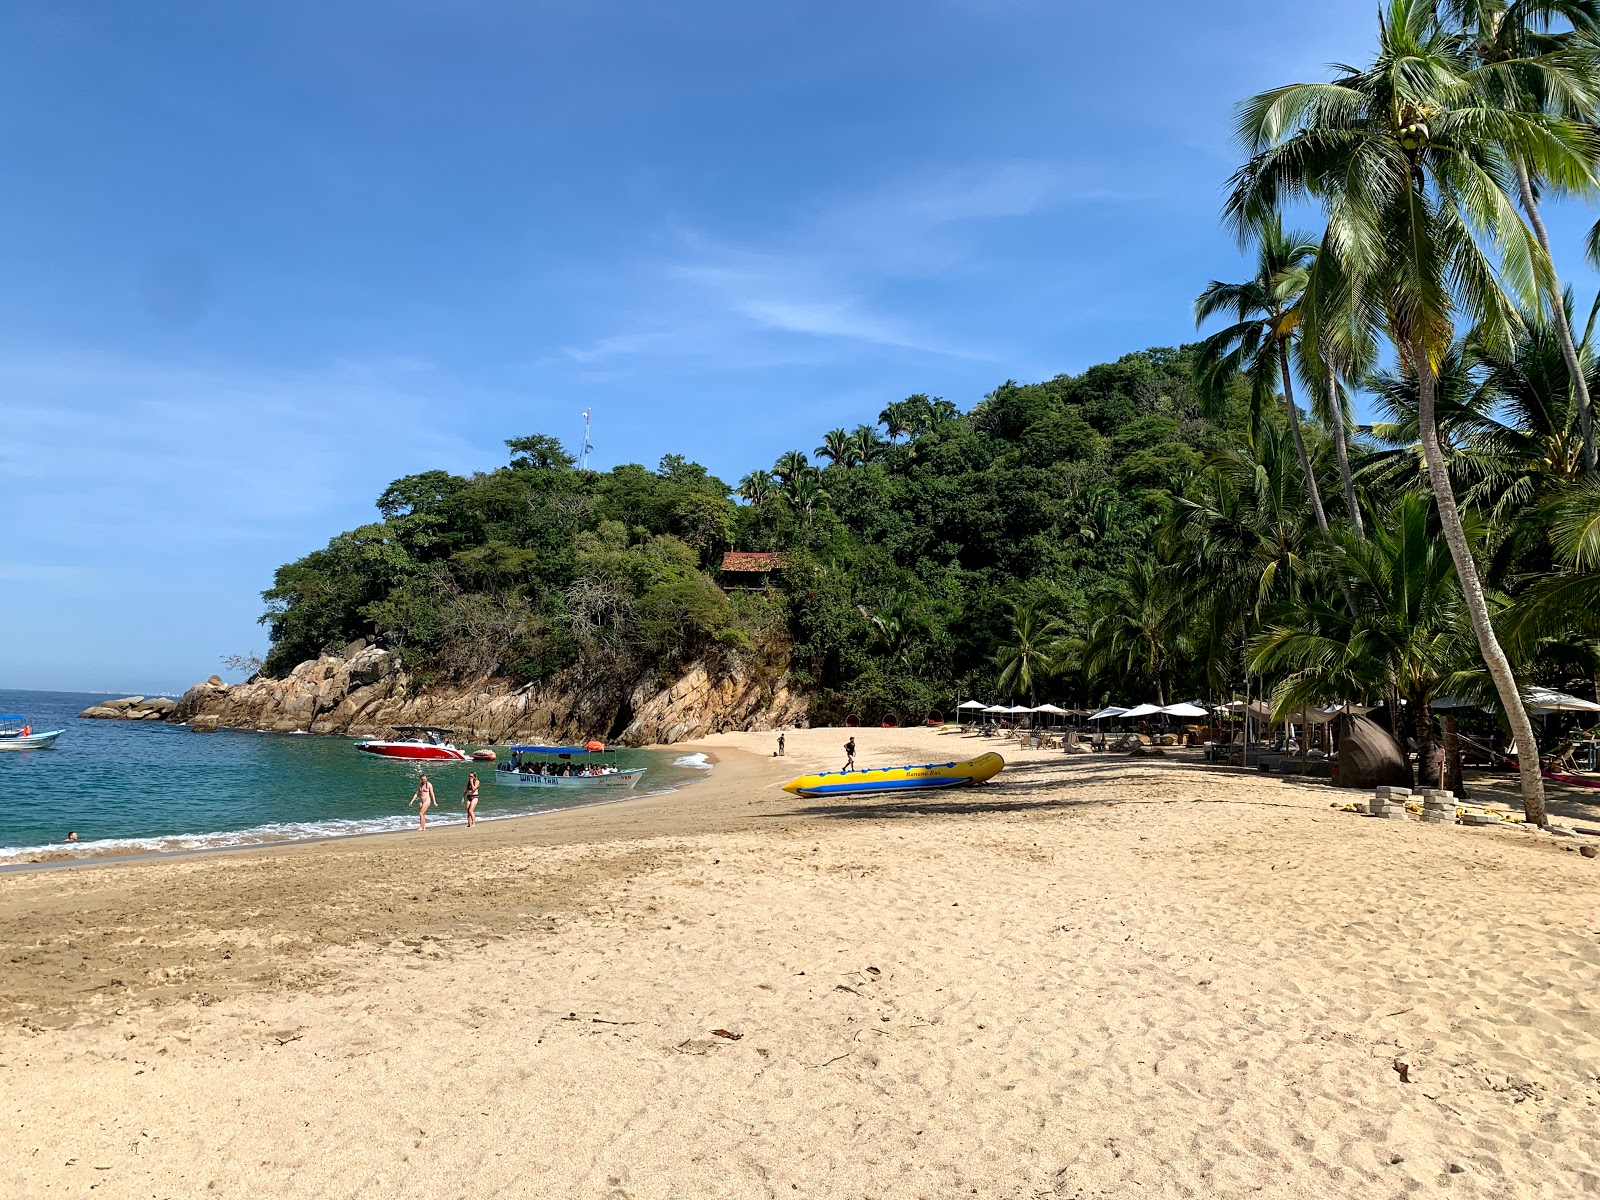 Majahuitas beach'in fotoğrafı hafif ince çakıl taş yüzey ile